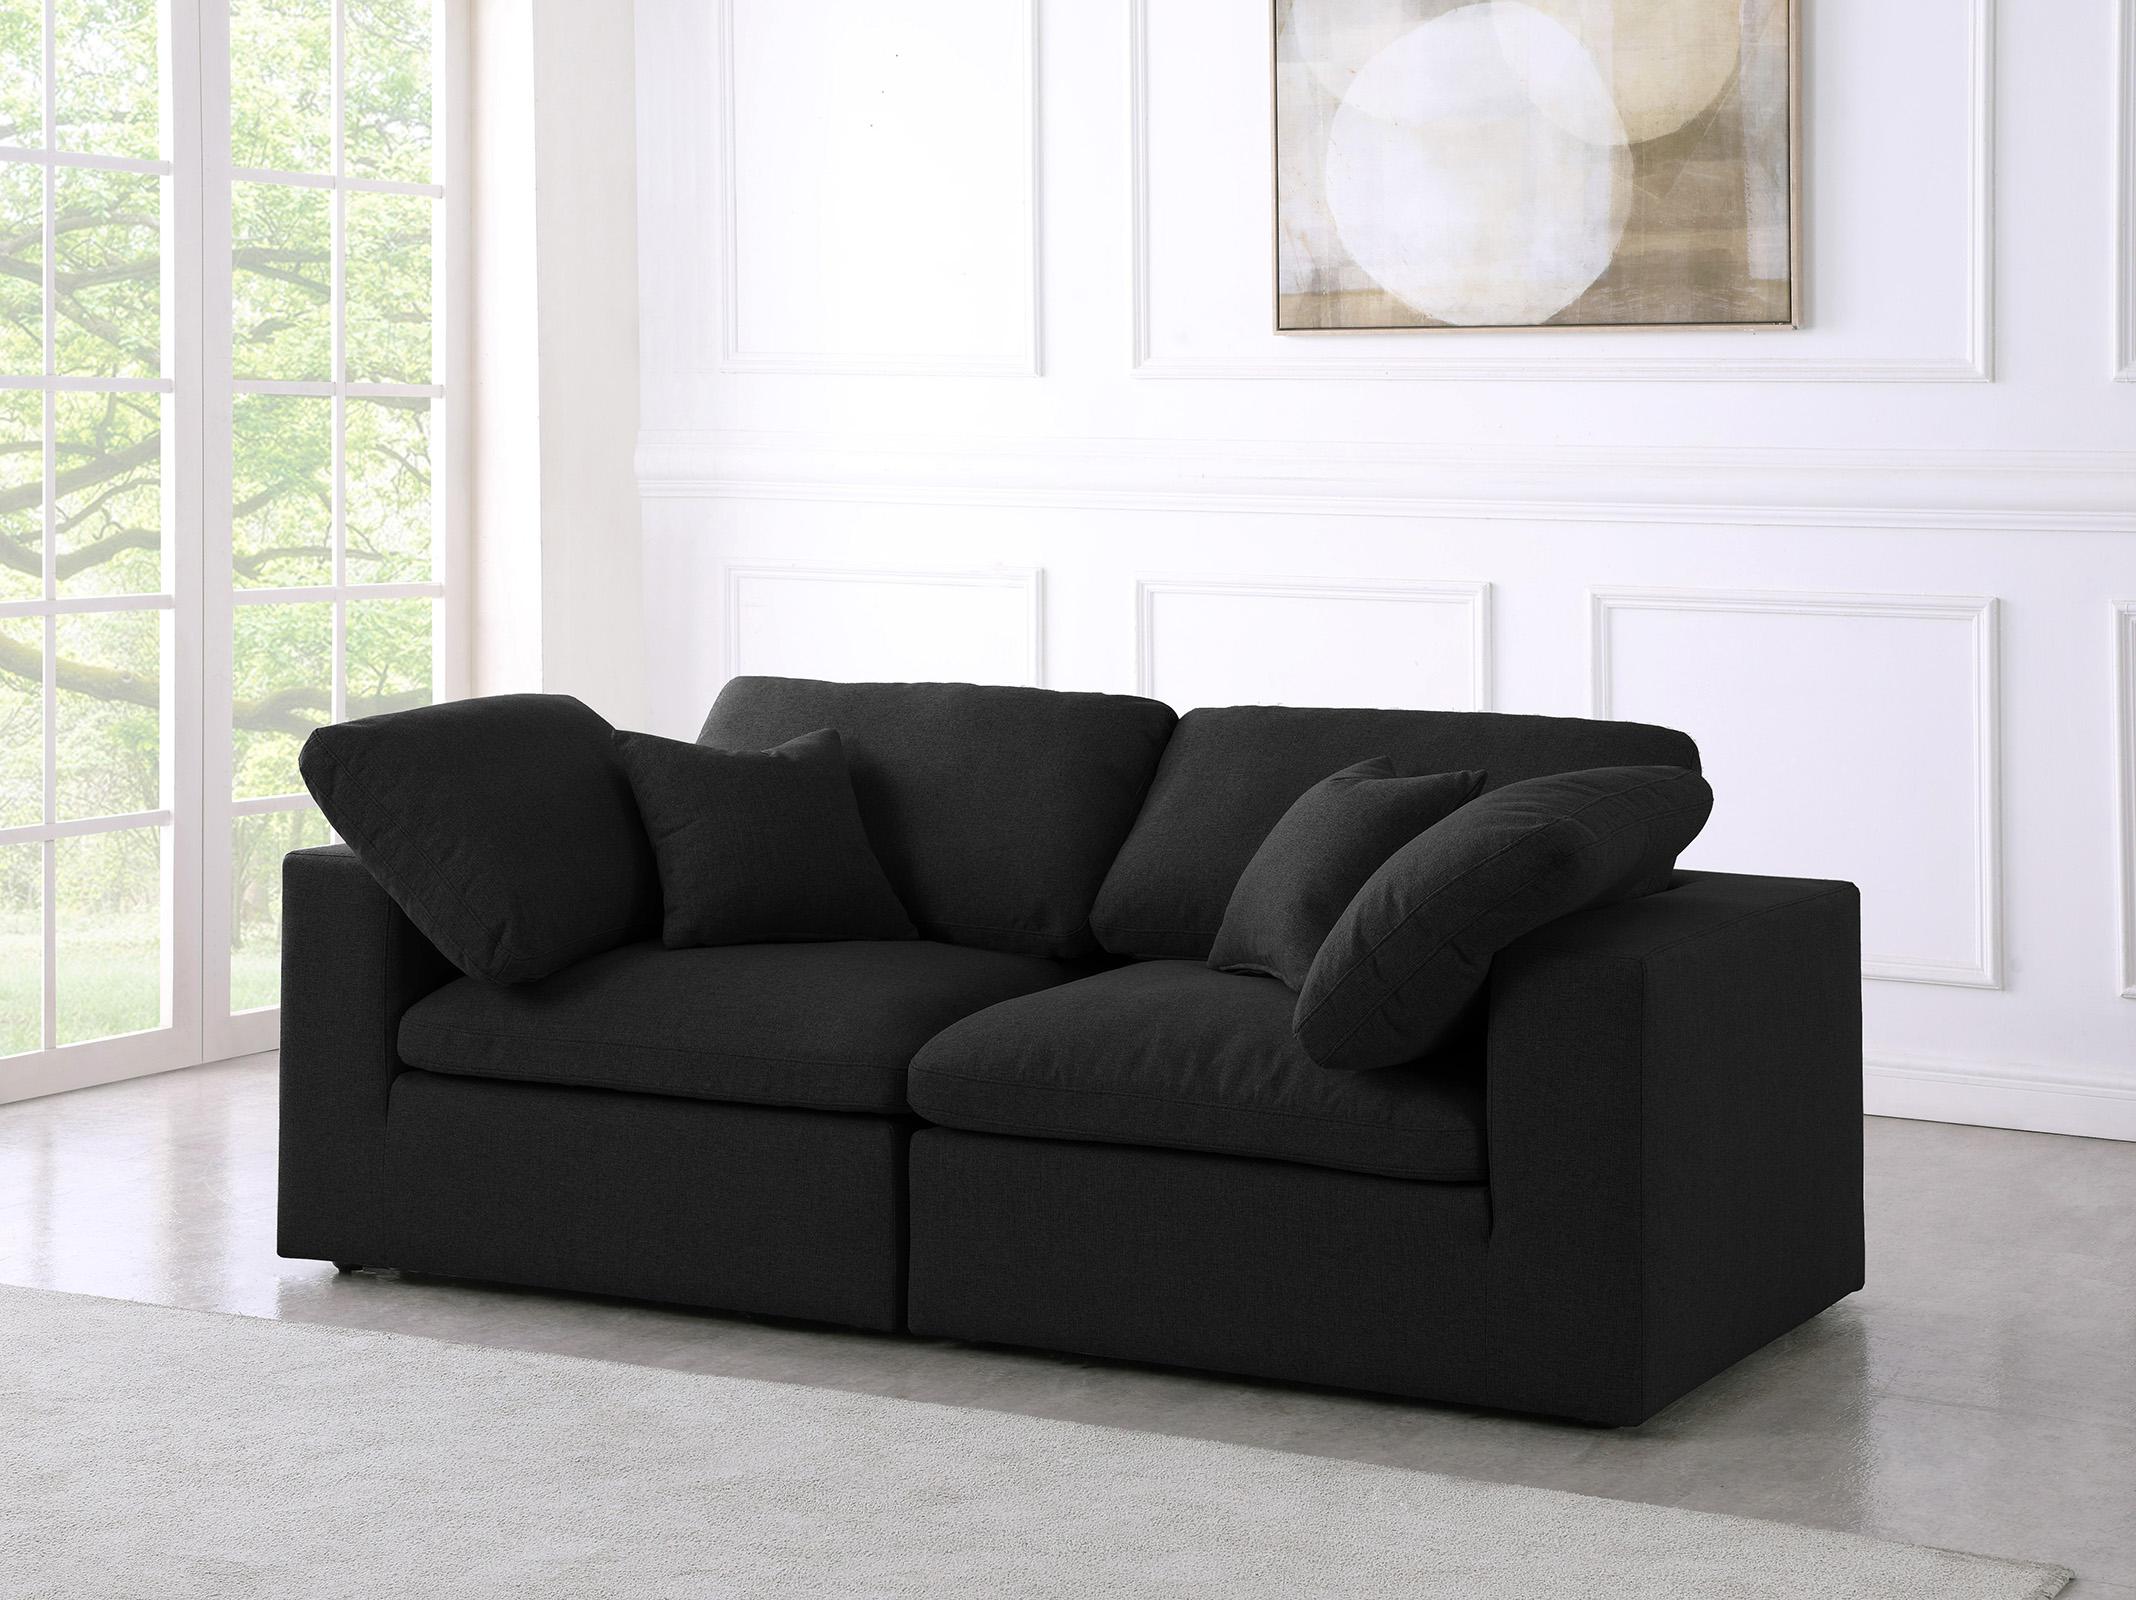 

    
Serene Black Linen Textured Fabric Deluxe Comfort Modular Sofa S80 Meridian
